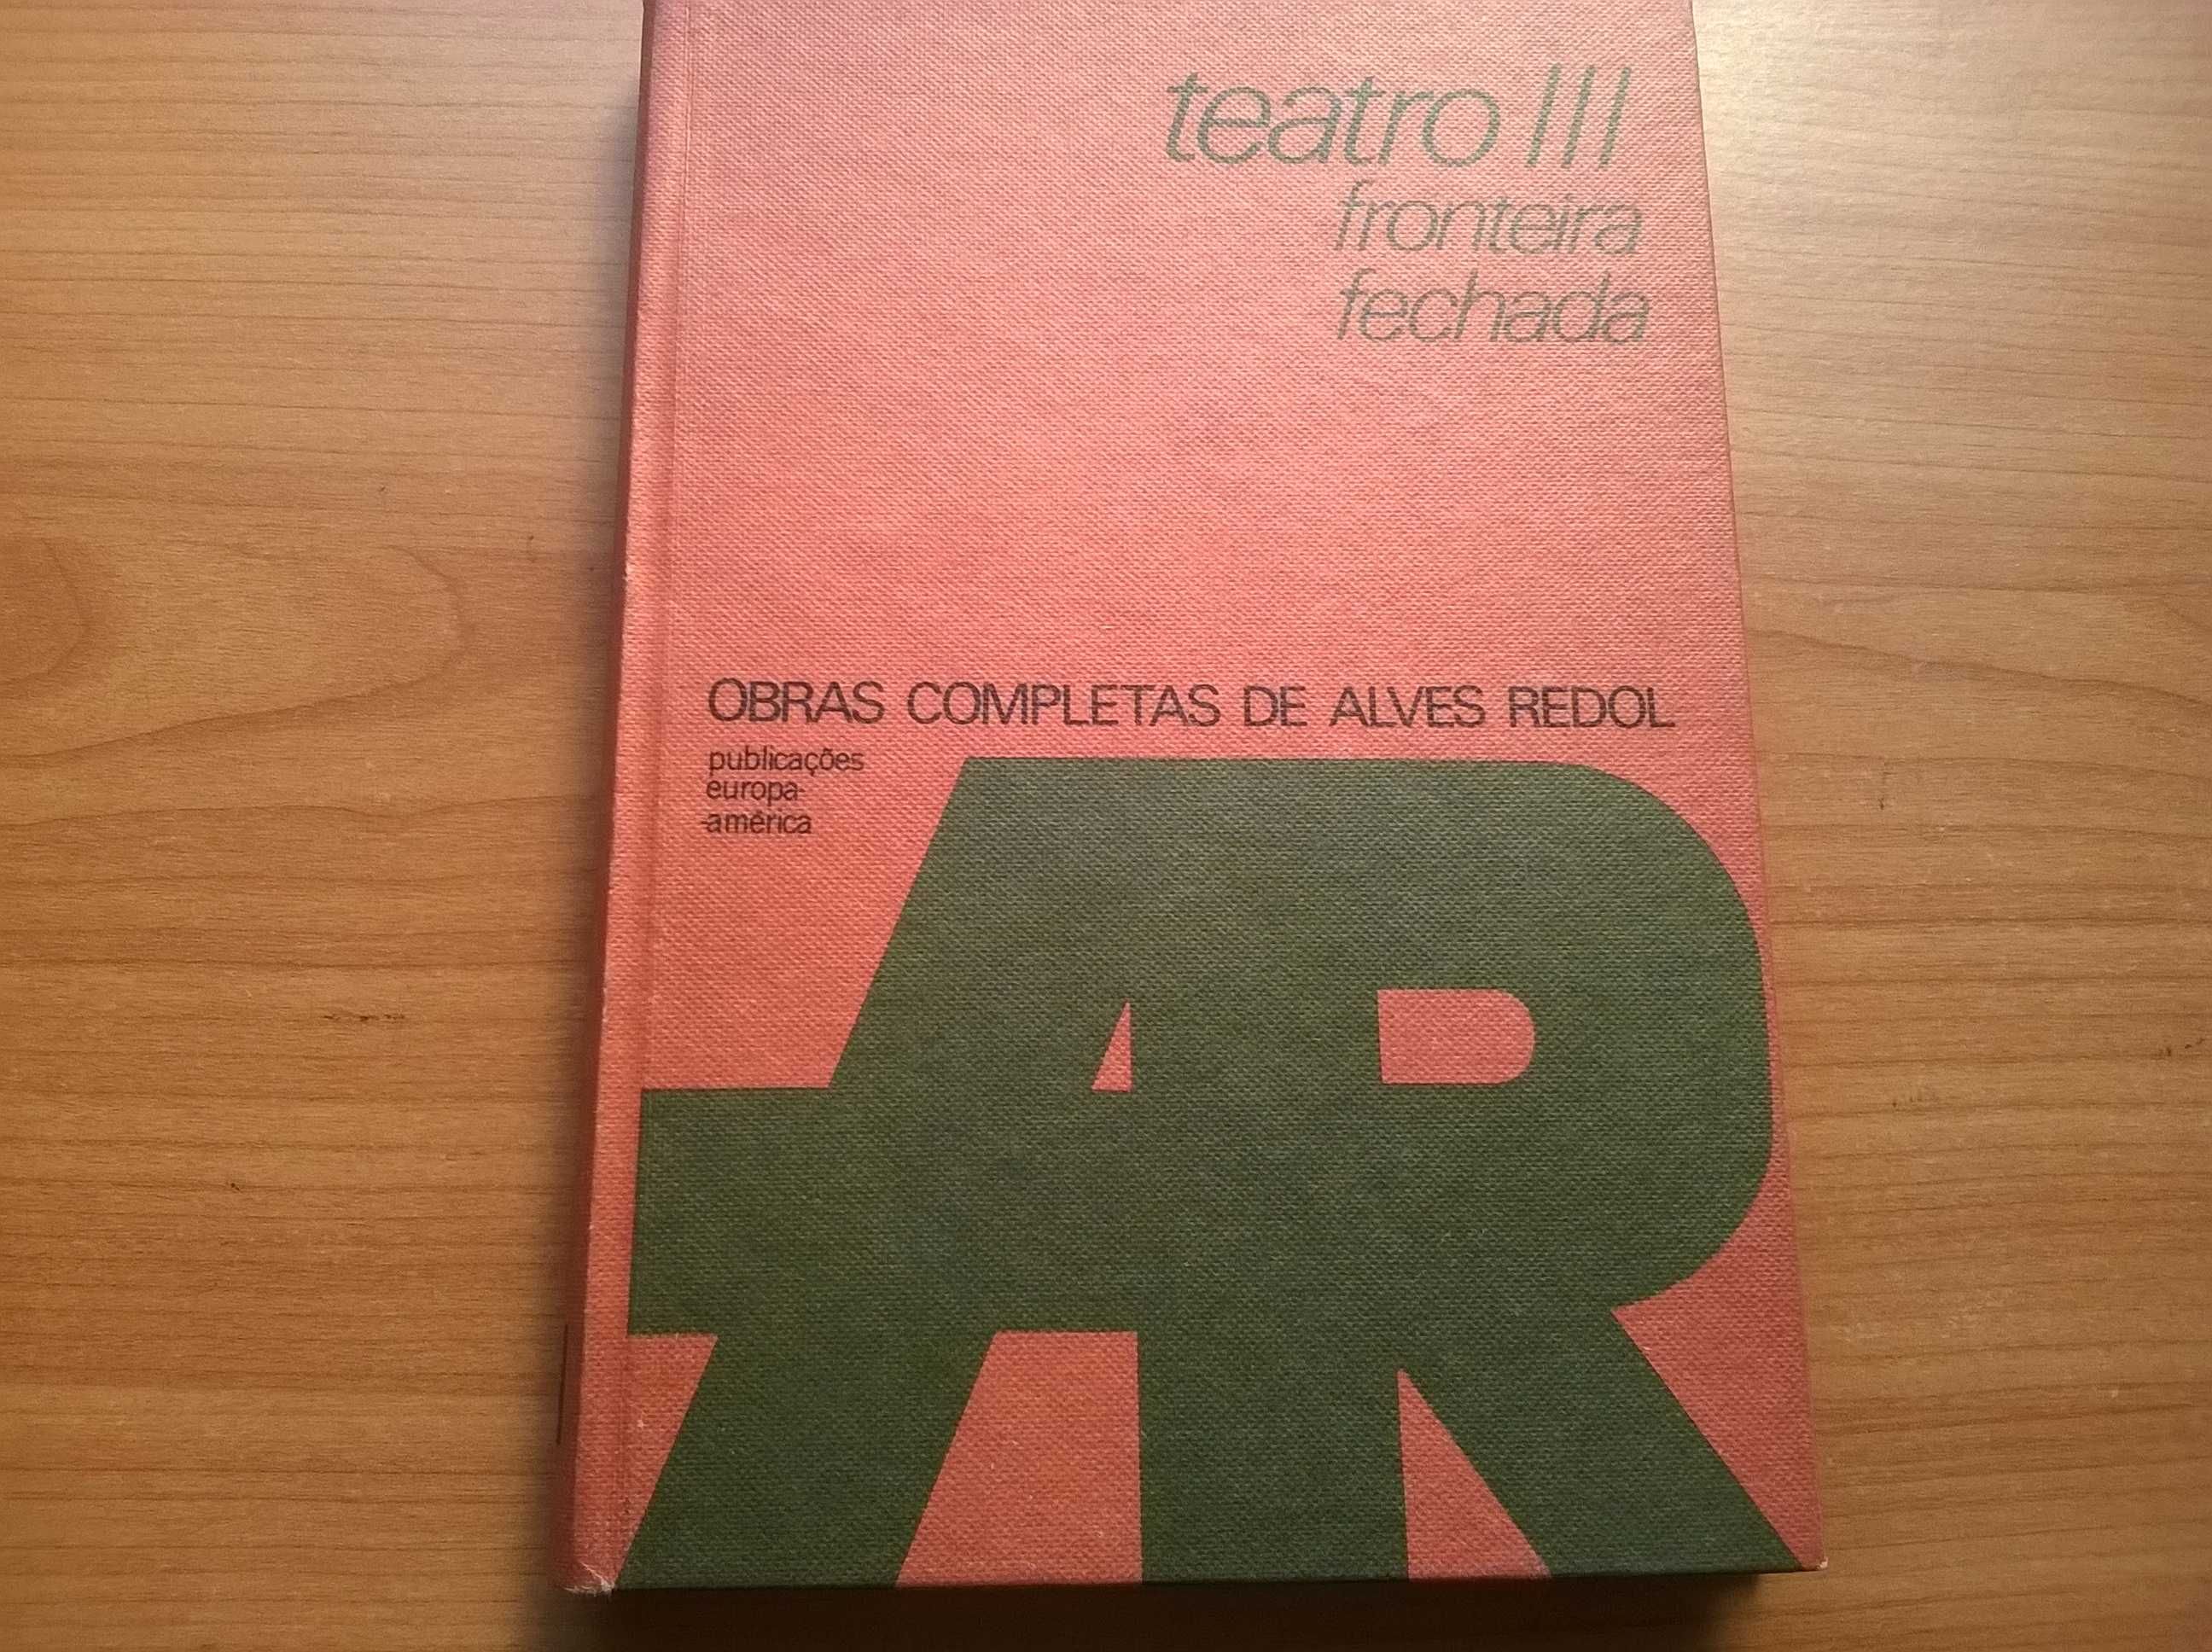 Teatro III Fronteira Fechda - Alves Redol (portes grátis)